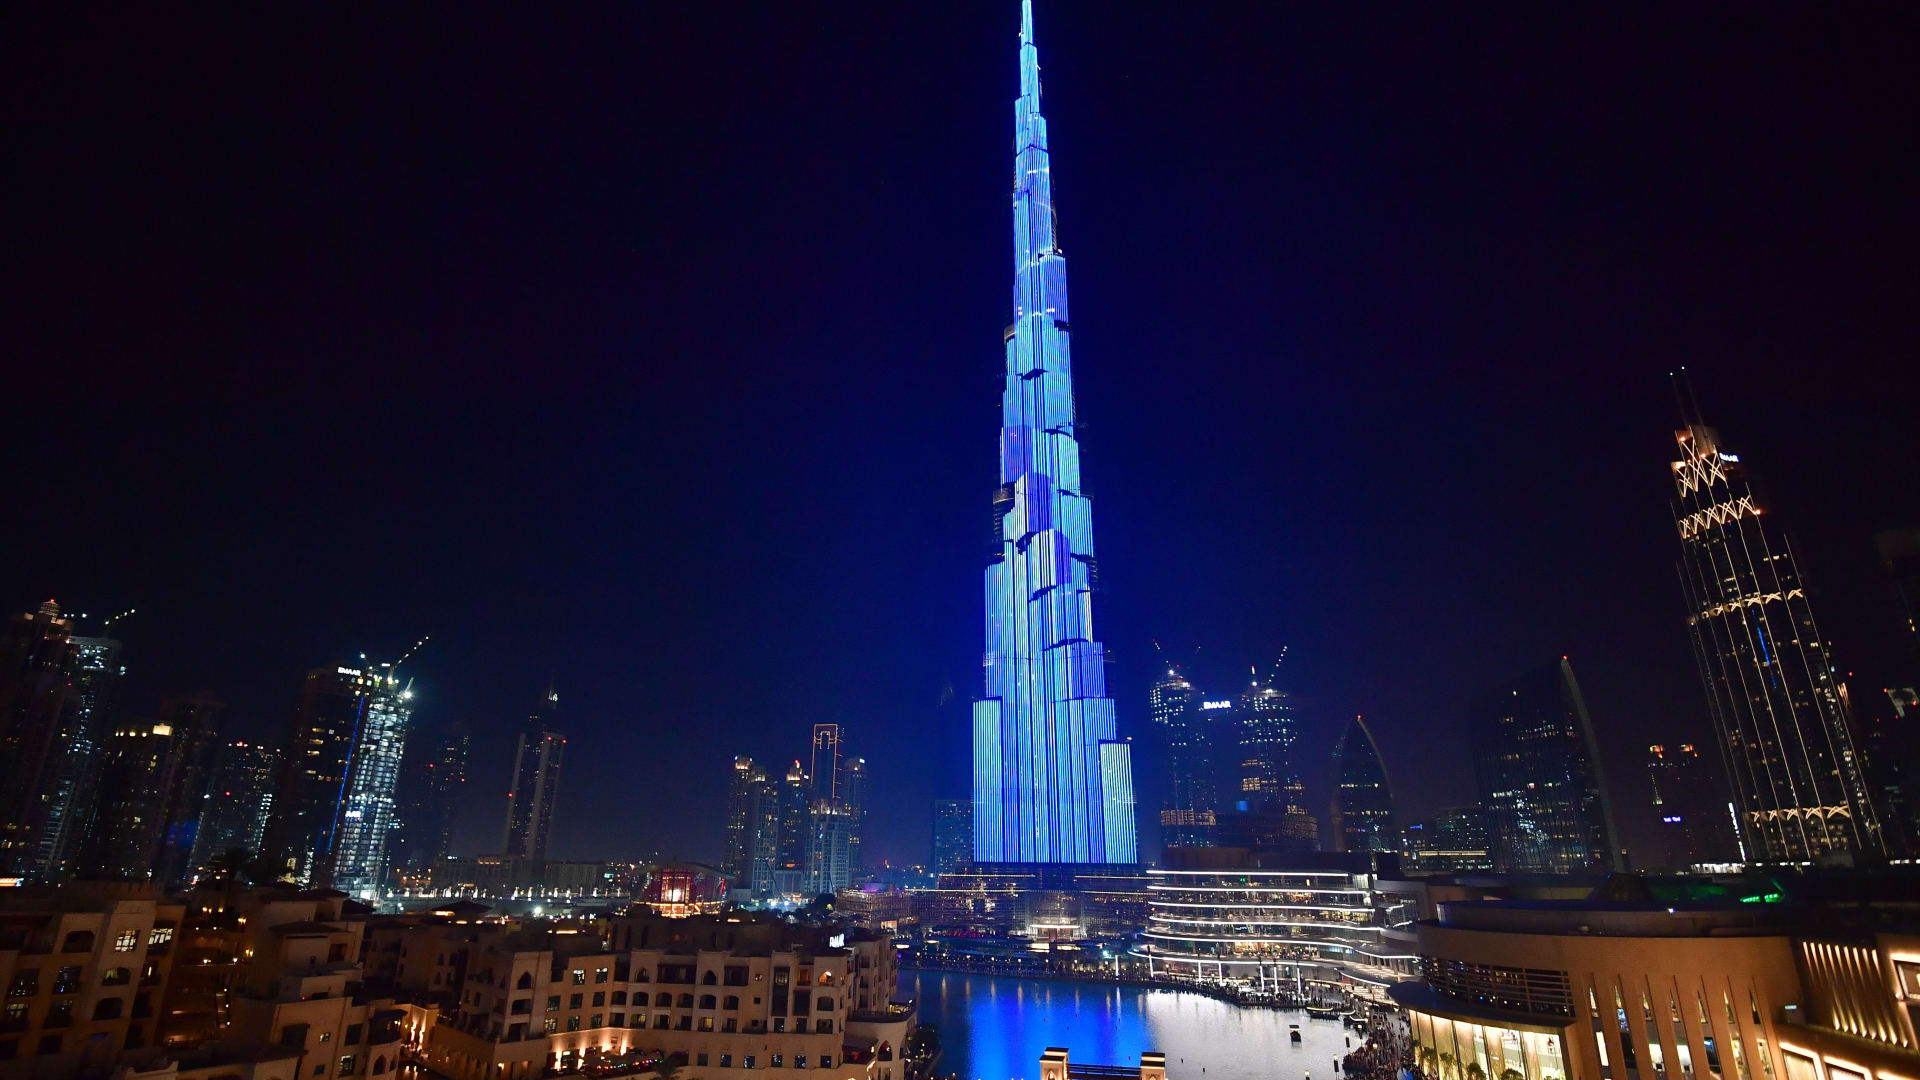 مشهد ساحر.. شاهد برج خليفة وهو "يتحوّل" إلى صاروخ فضائي قبيل انطلاق الإماراتي سلطان النيادي إلى الفضاء